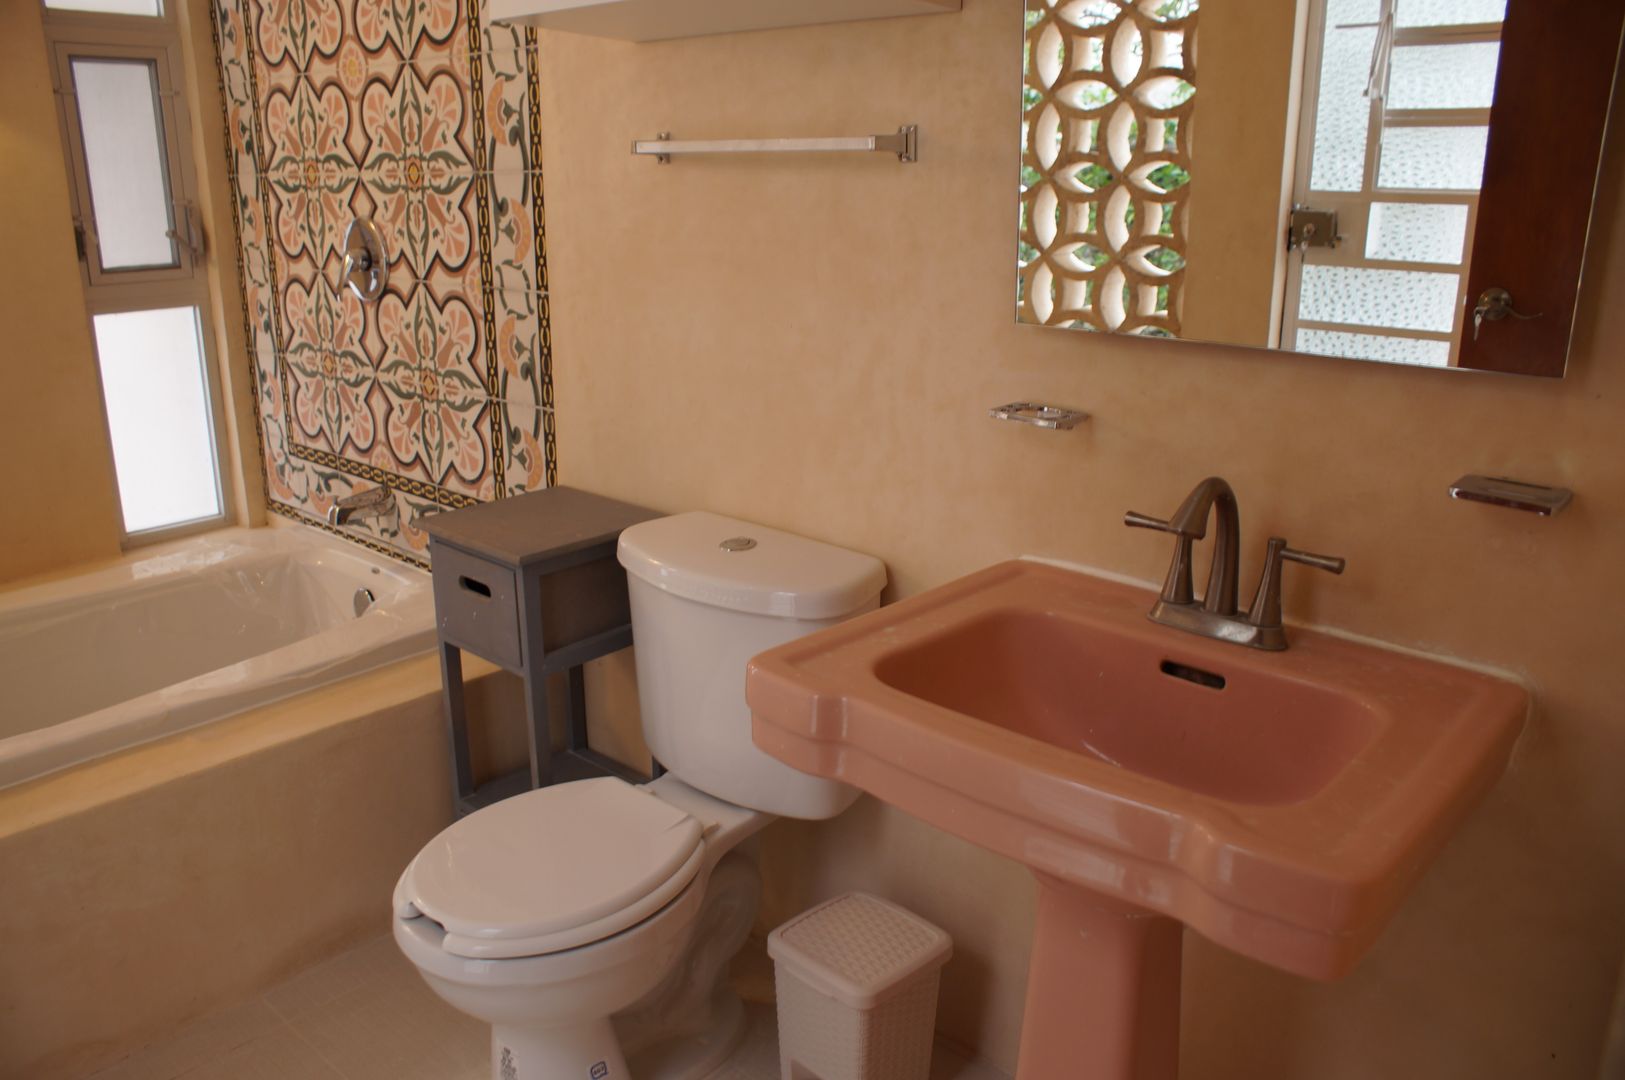 B&B "La Galería", Escaleno Taller de Diseño Escaleno Taller de Diseño Eclectic style bathrooms